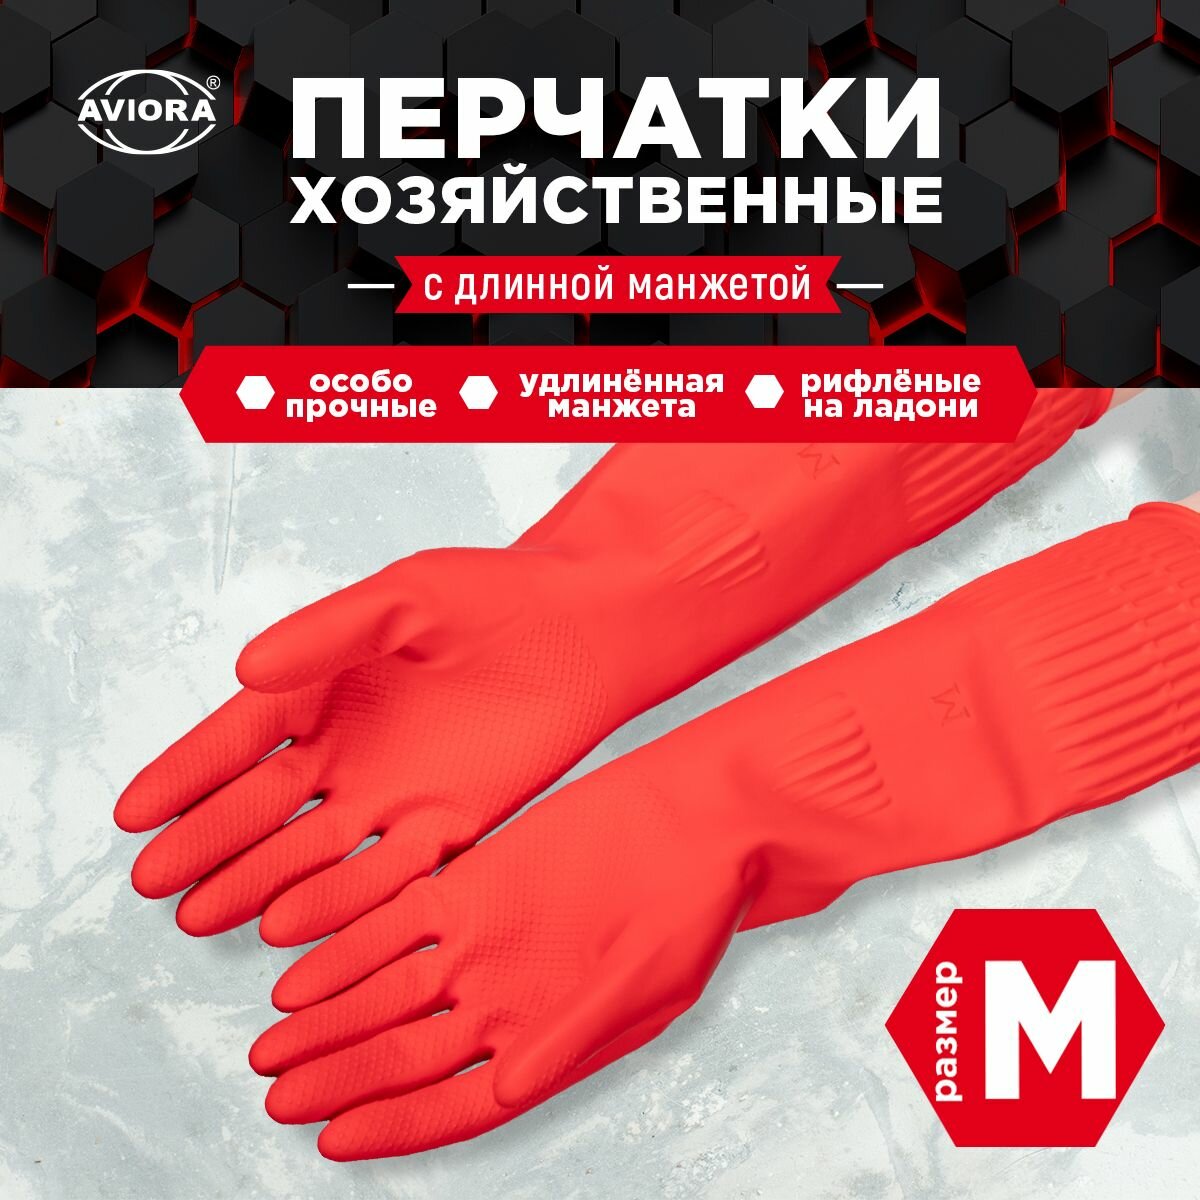 Хозяйственные перчатки резиновые с удлиненной манжетой, размер M, AVIORA (402-939)